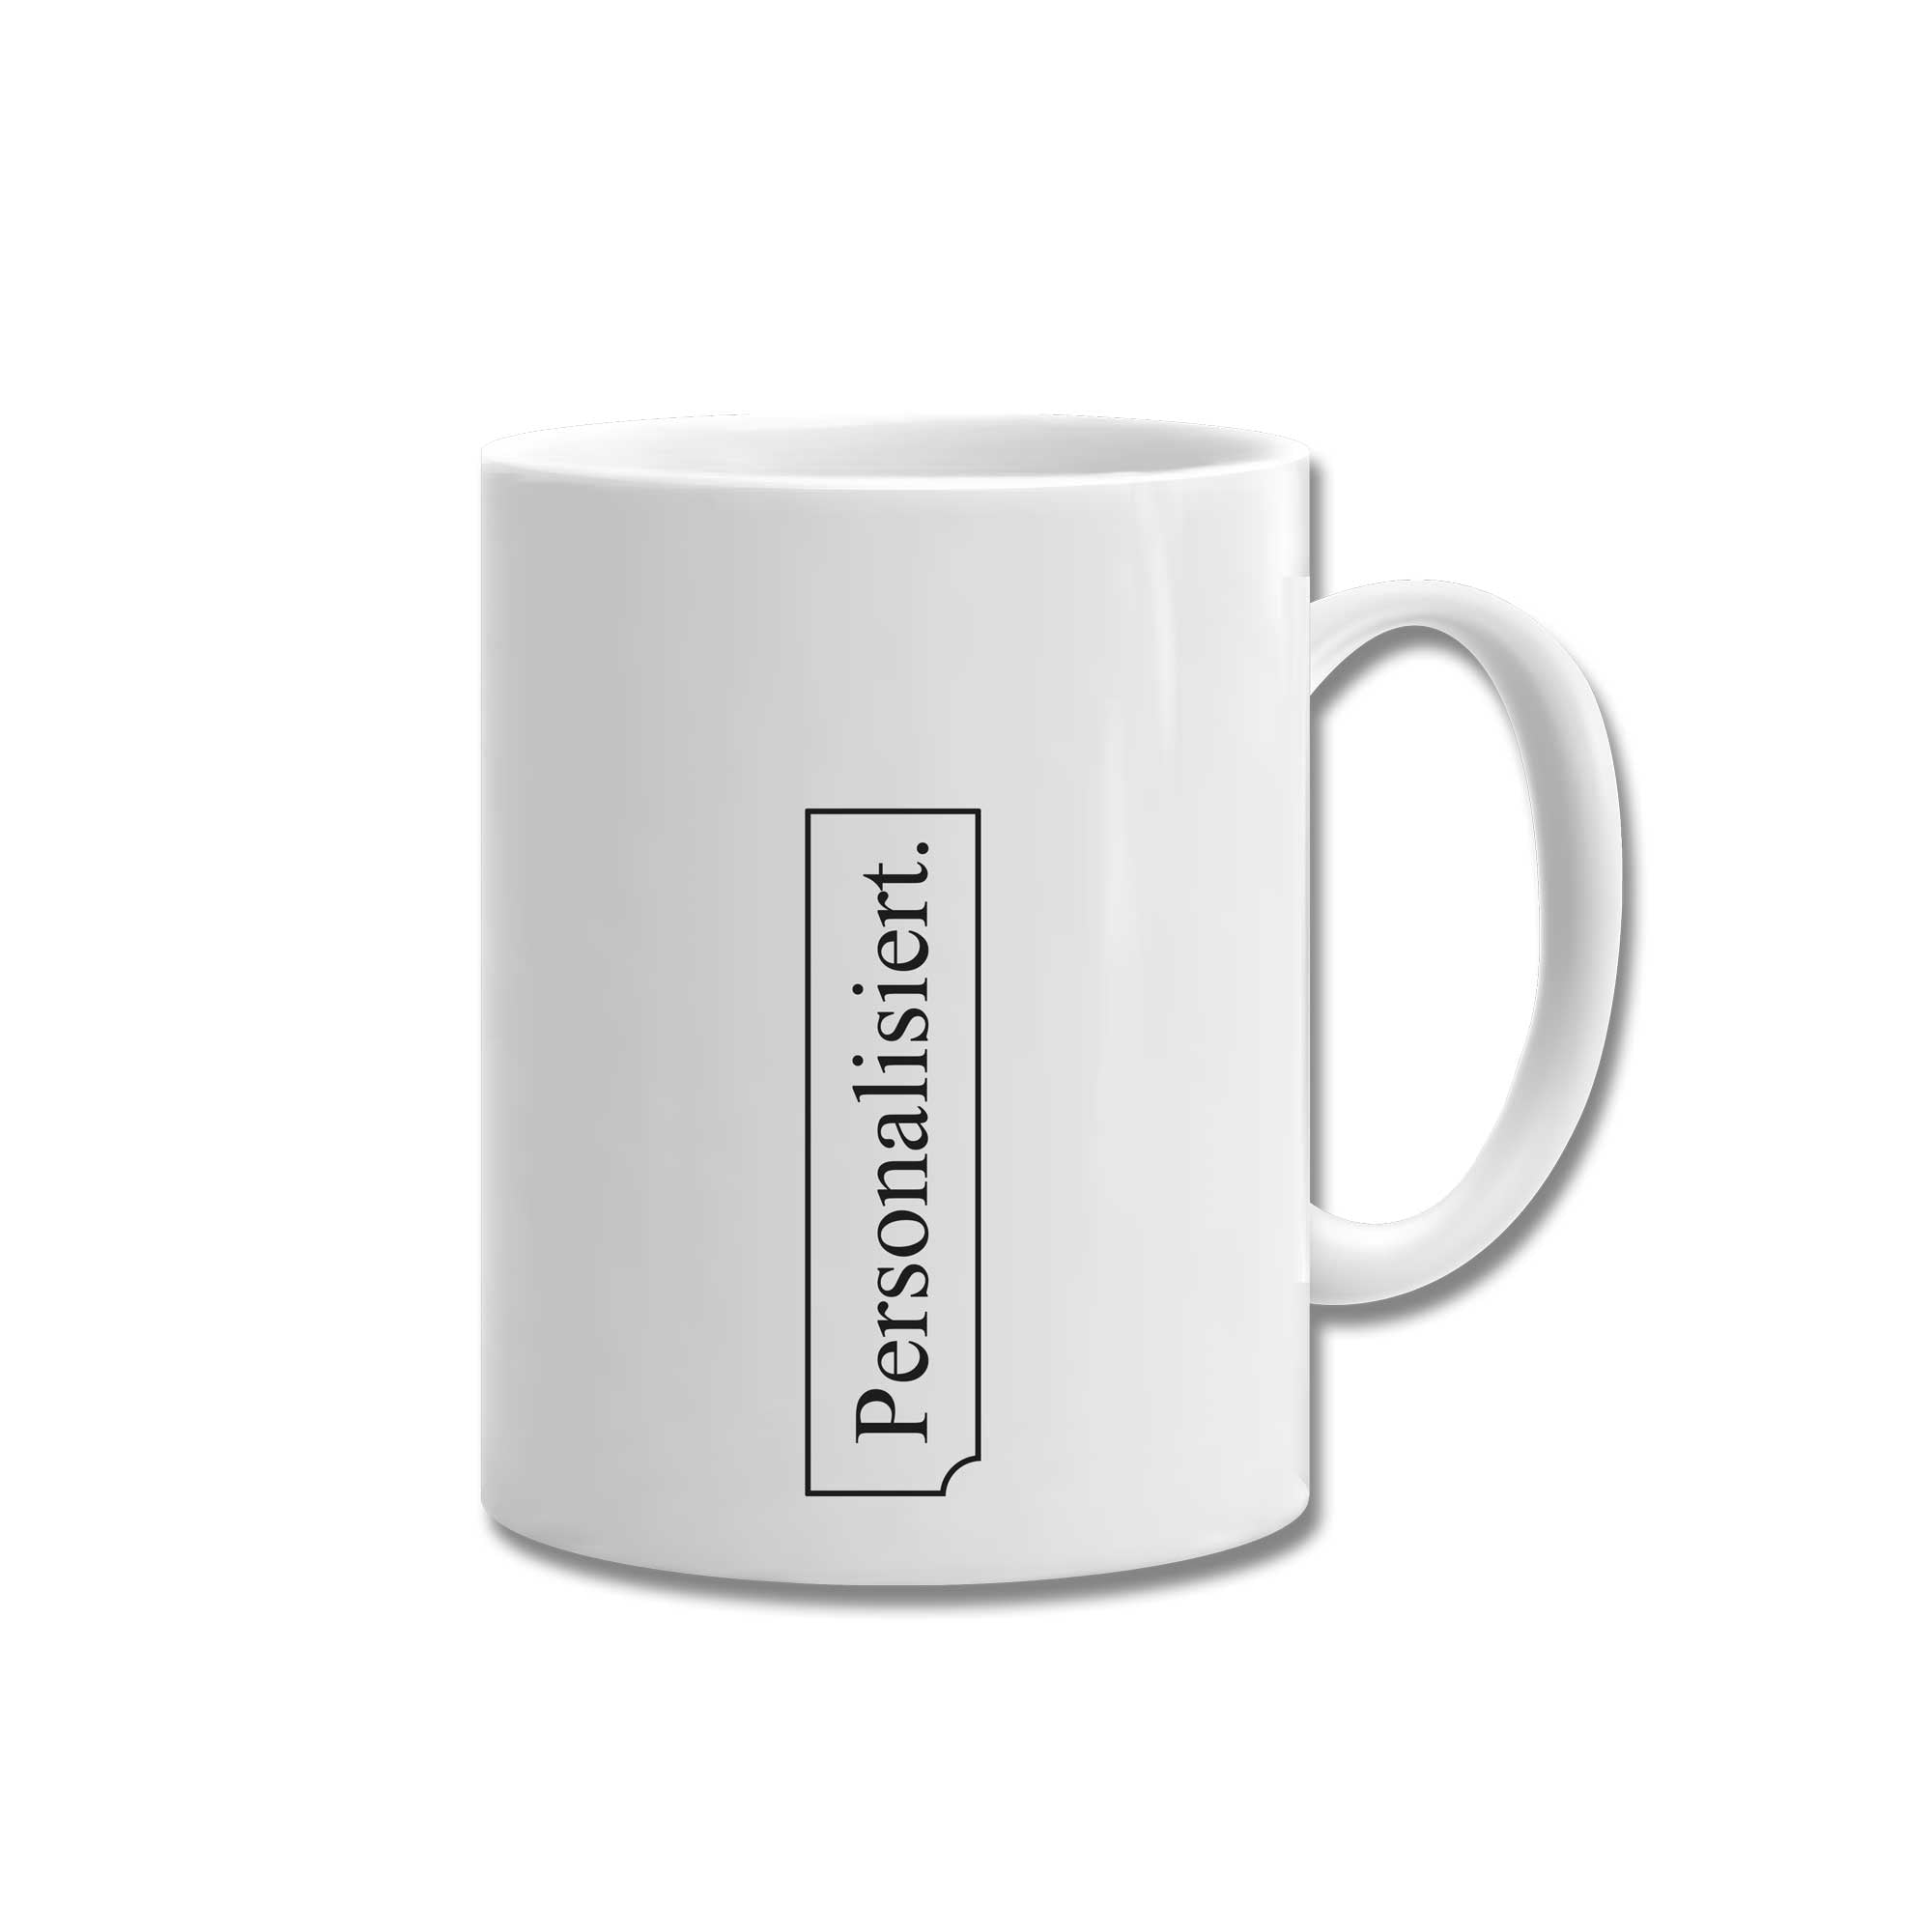 Personal ceramic mug